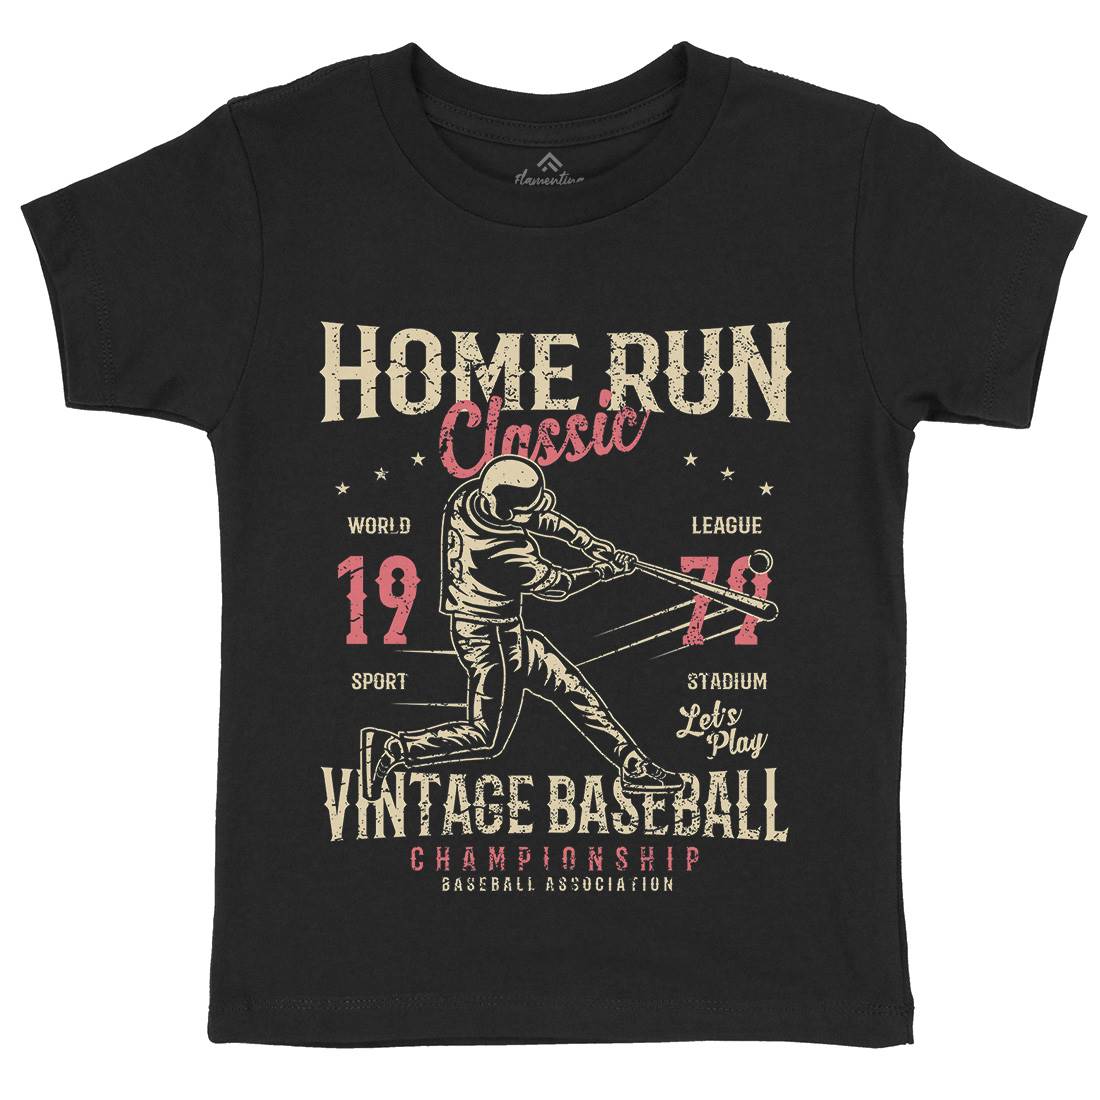 Home Run Classic Kids Crew Neck T-Shirt Sport A065